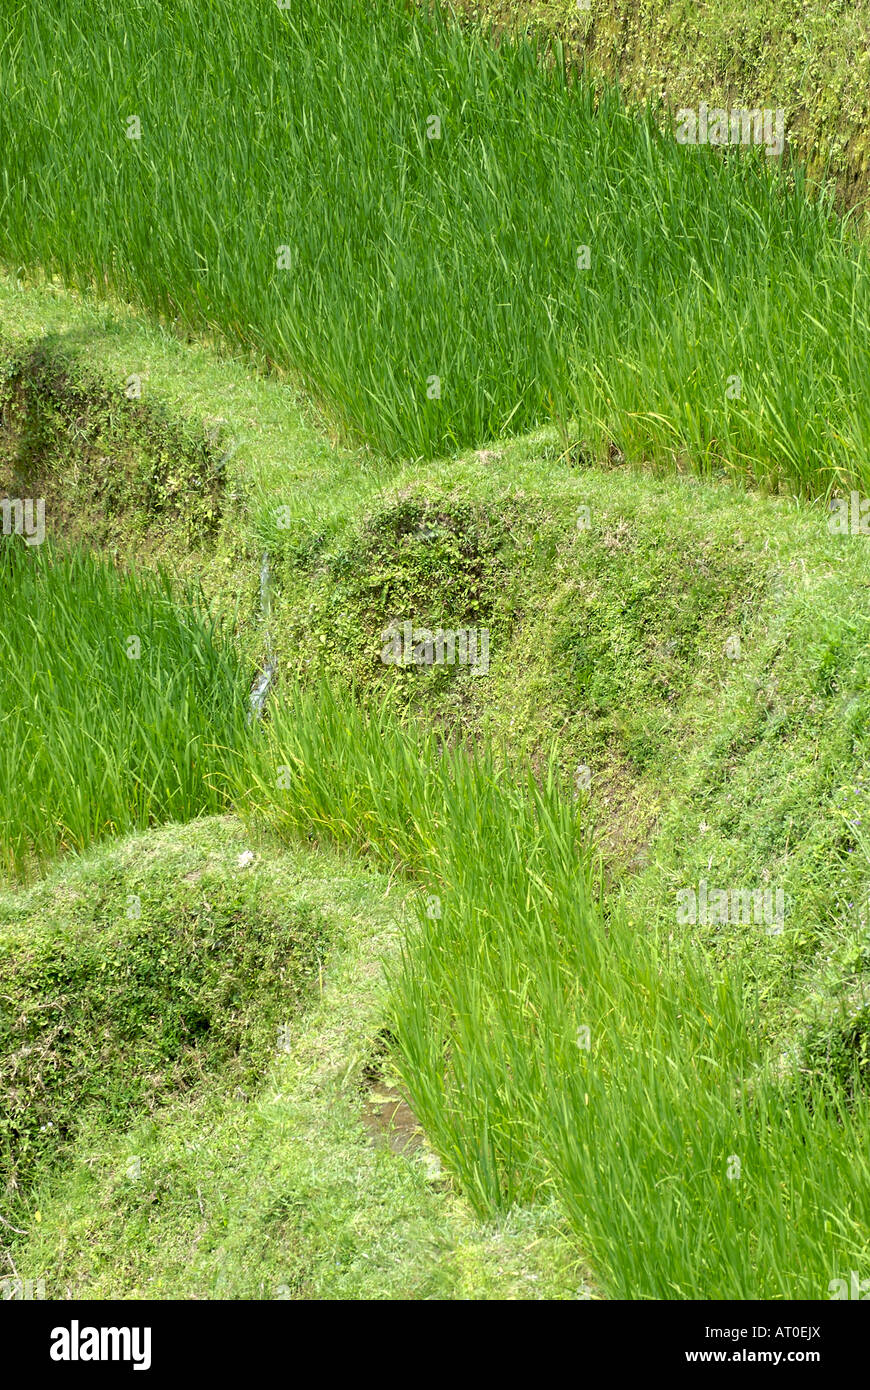 Dramáticamente los campos de arroz en terrazas, cerca de la ciudad de Ubud en la isla indonesia de Bali. Foto de stock